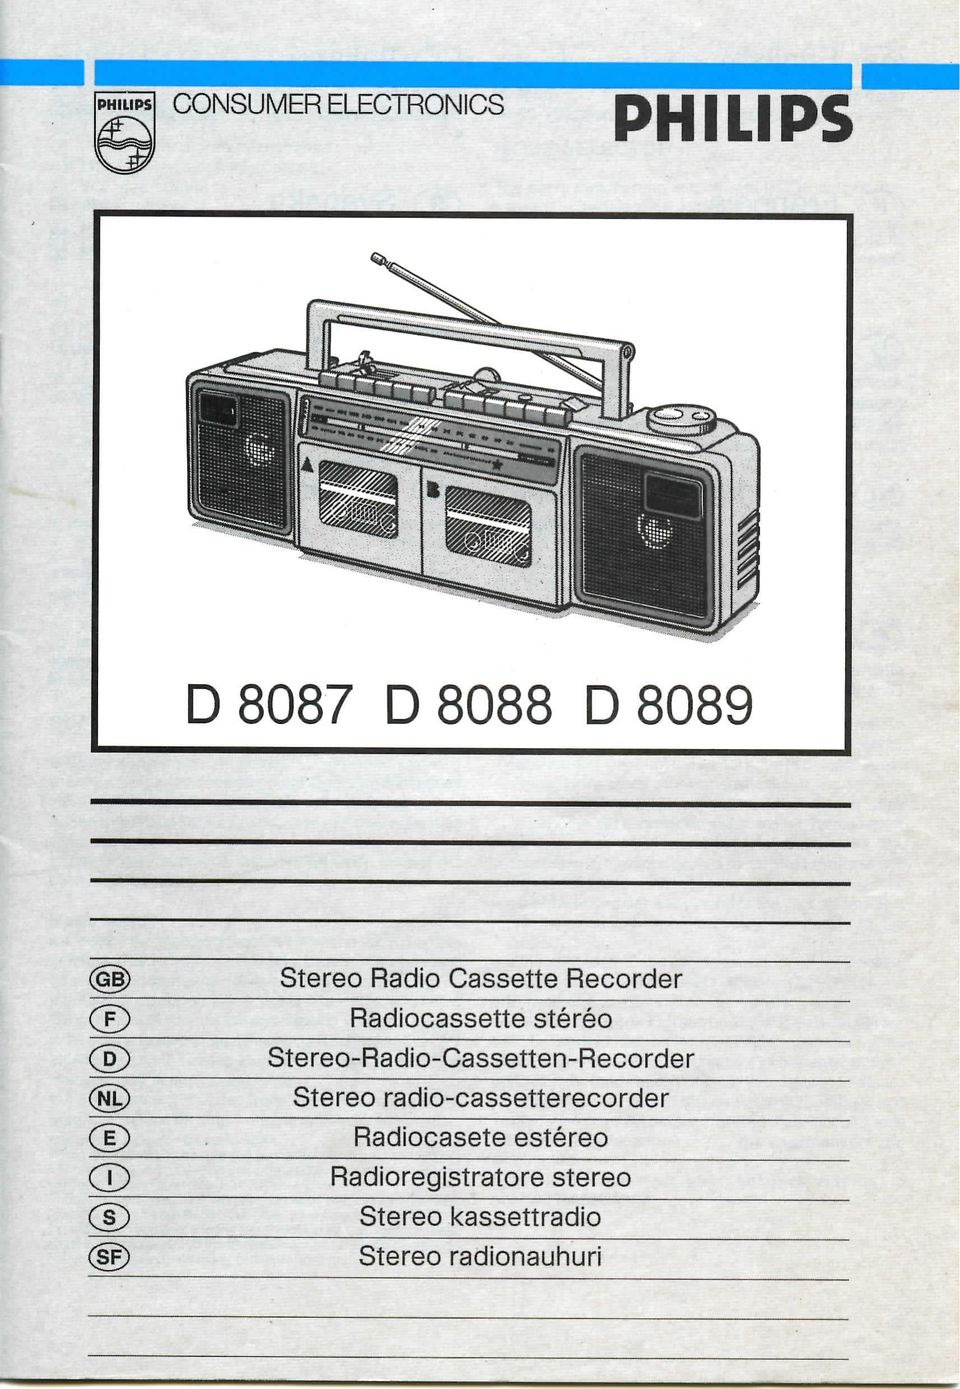 Stereo-Radio-Cassetten-Recorder Stereo radio-cassetterecorder